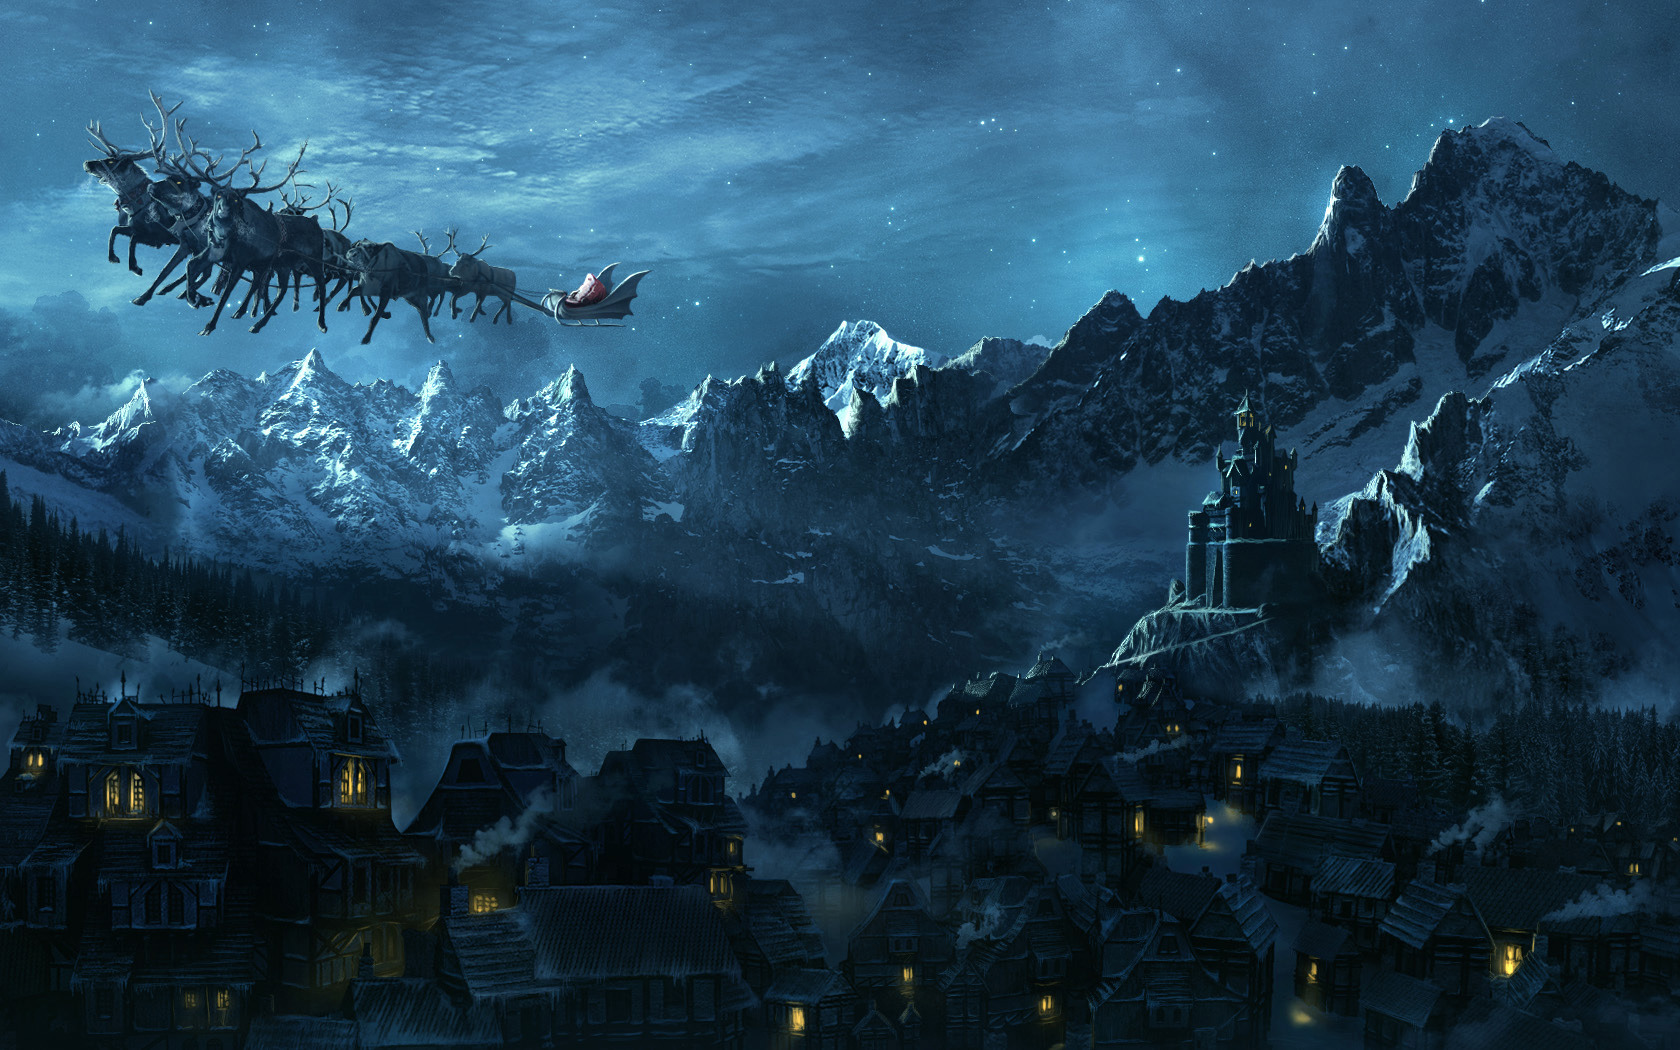 3d обои Санта Клаус летит над ночной деревушкой лежащей у подножья гор, чтобы залезть в камин к ее жителям  новый год # 65680